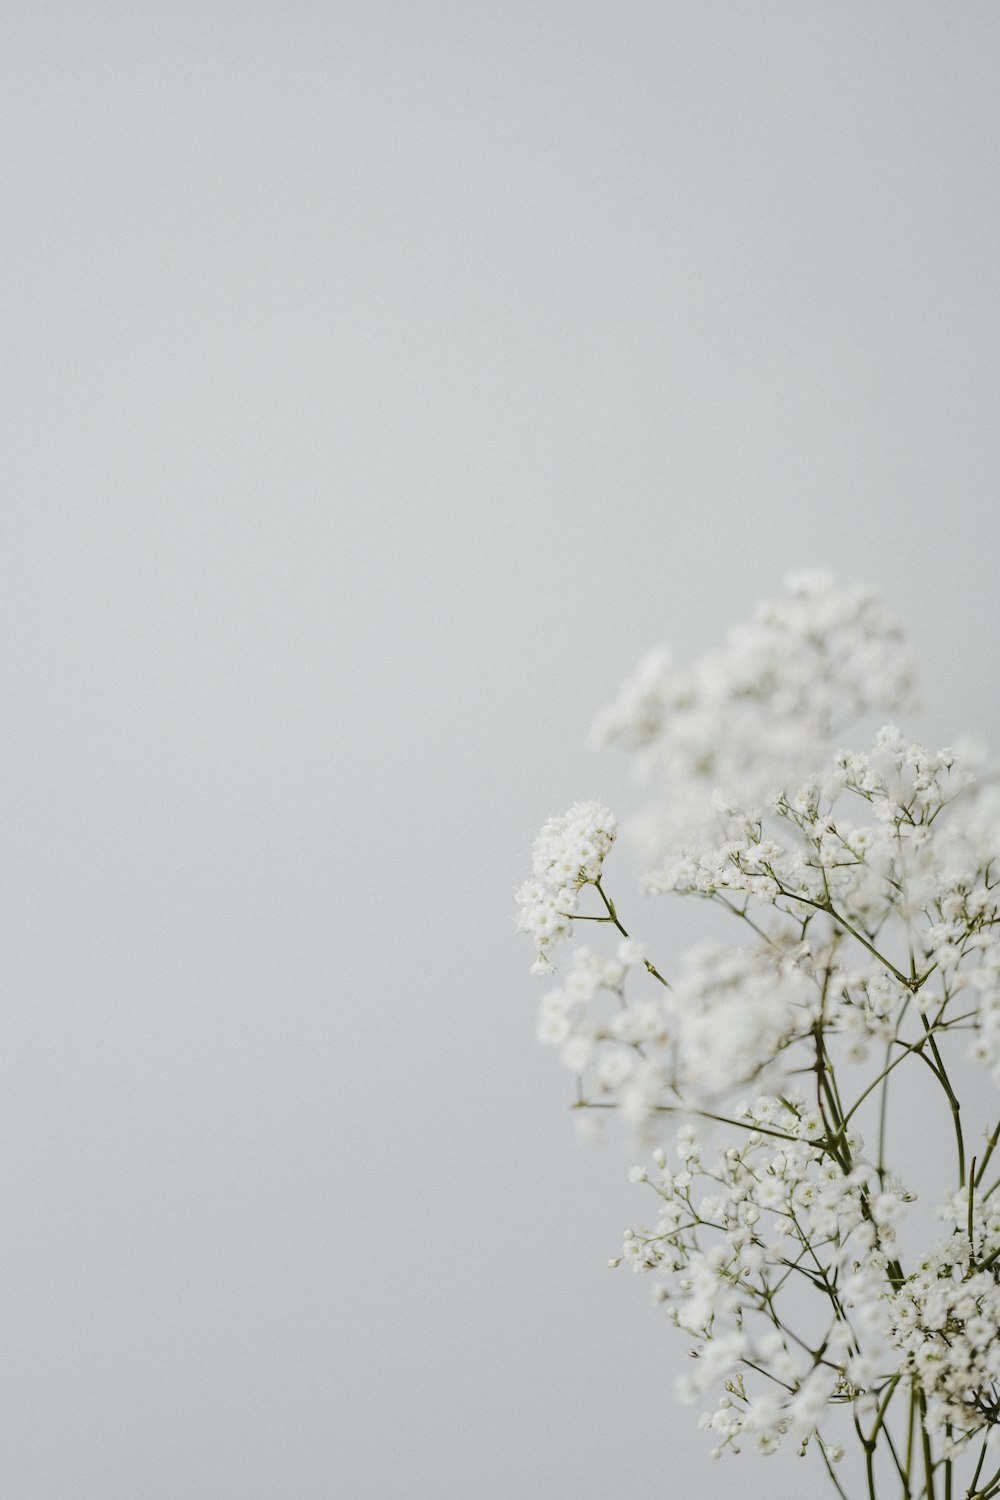 Hoa anh đào trắng: Nét tinh tế và tuyệt vời của hoa anh đào trắng chỉ cần một lần bắt gặp sẽ khiến bạn say mê và ngất ngây. Hãy chiêm ngưỡng những bức ảnh vô cùng đẹp này để tăng thêm niềm yêu thích với hoa anh đào.